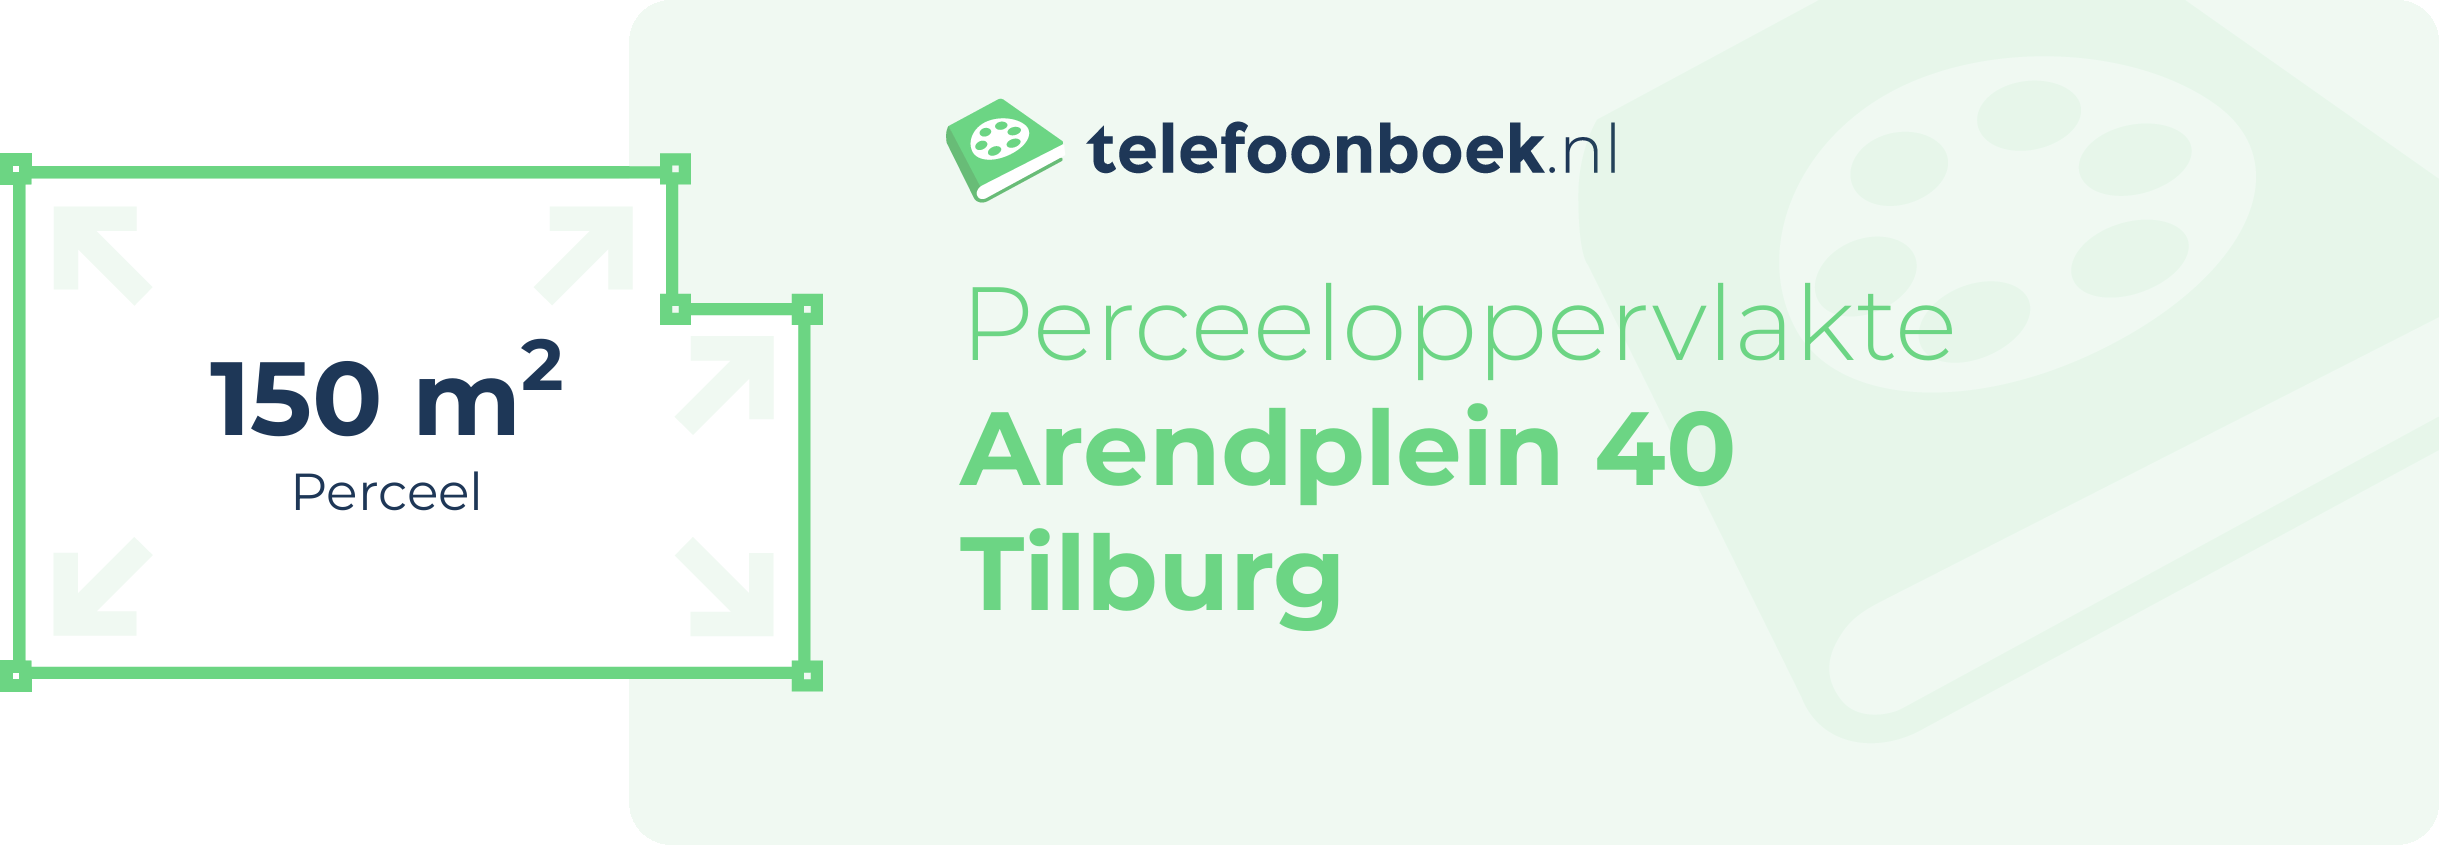 Perceeloppervlakte Arendplein 40 Tilburg